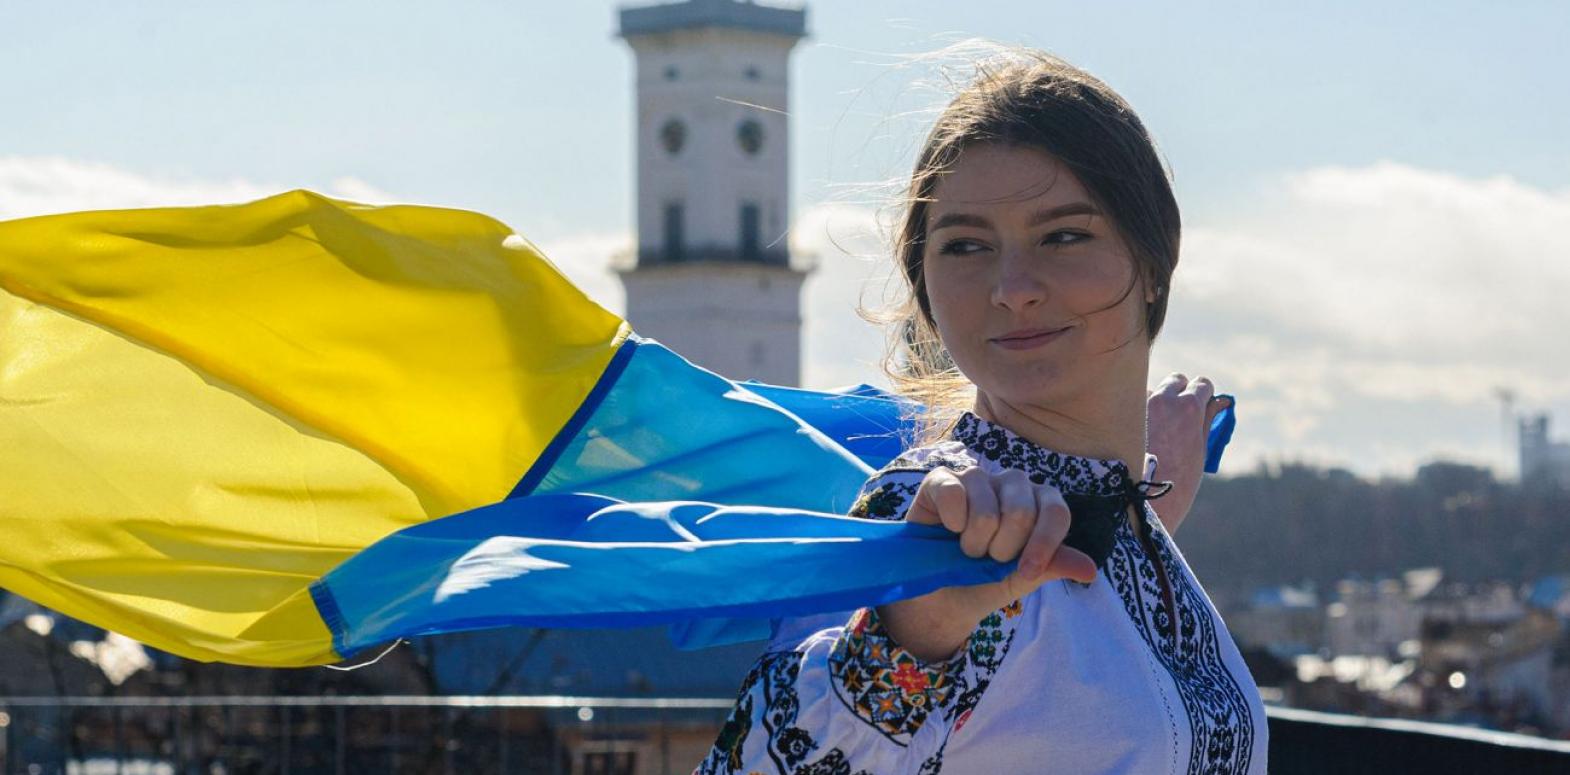 Украинцев, верящих в лучшее будущее страны, стало больше в разы, - опрос